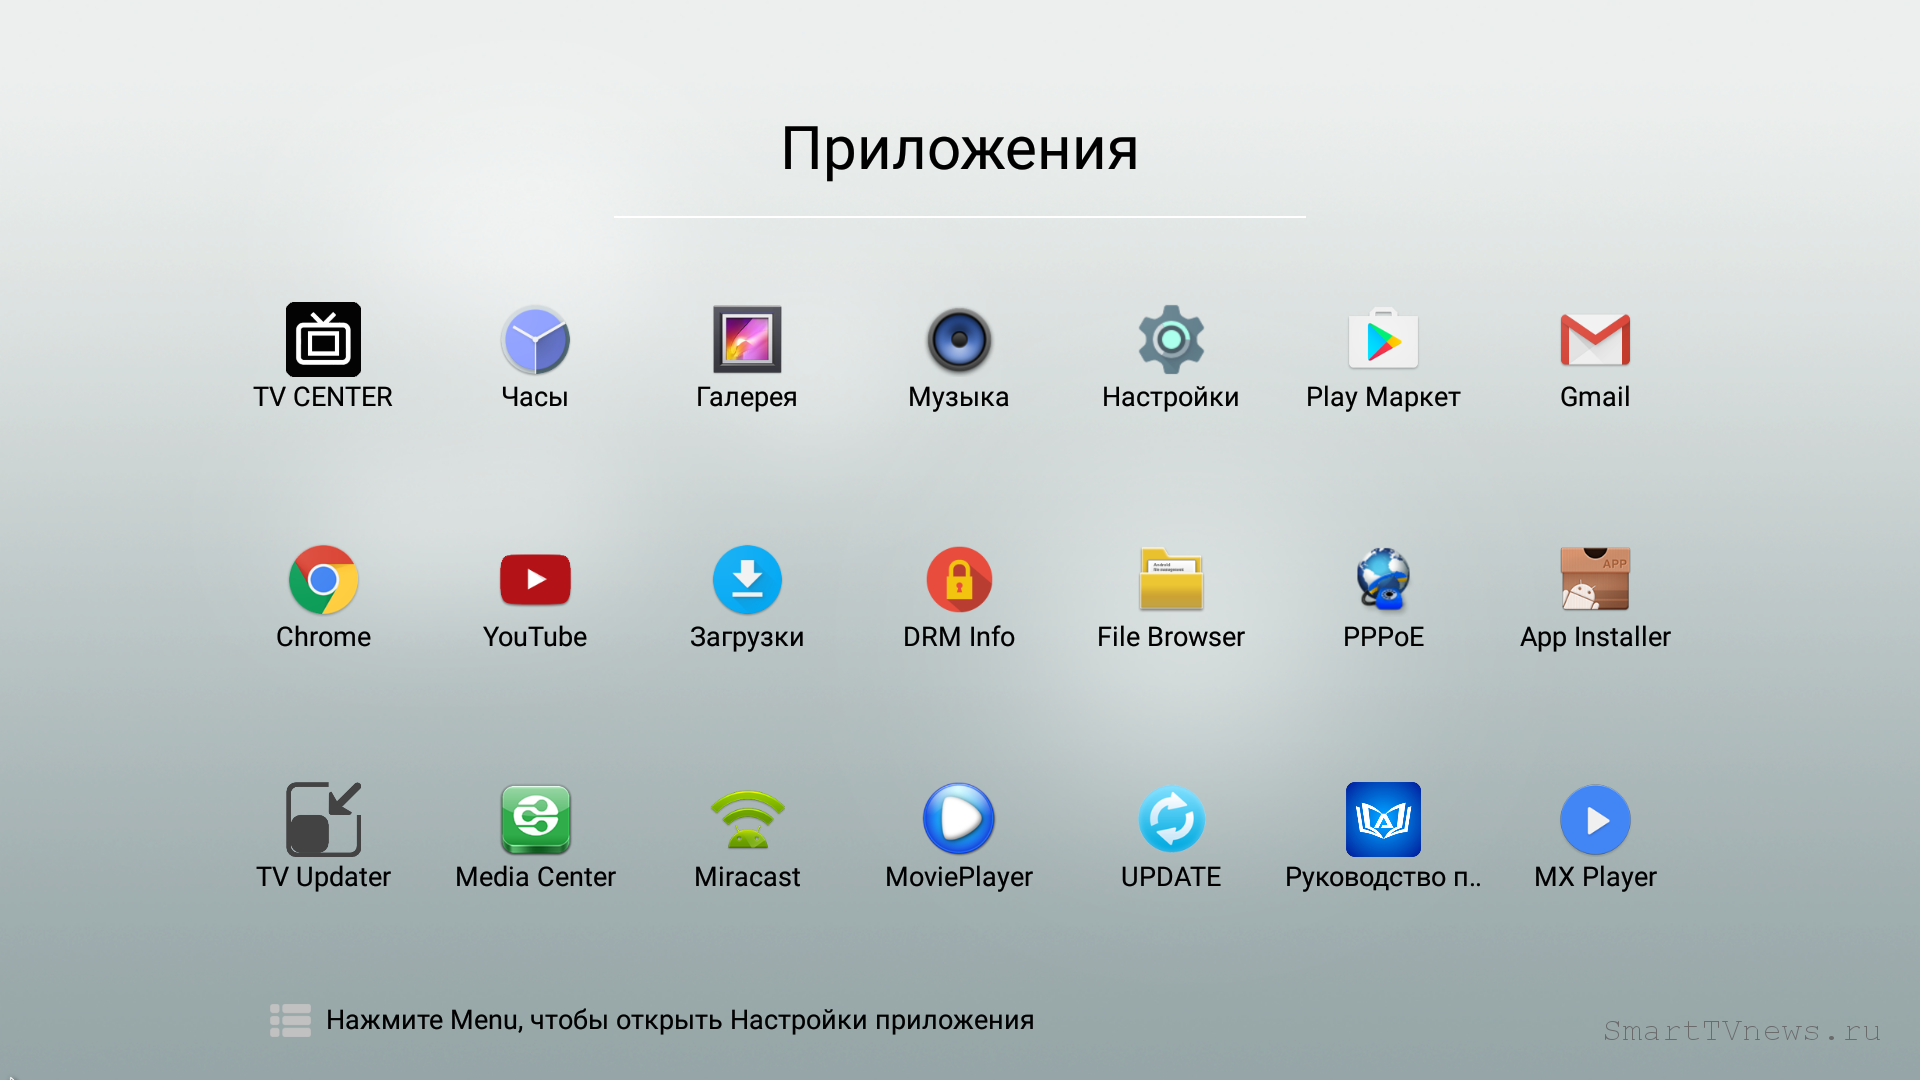 Русские приложения на андроид телевизор бесплатные